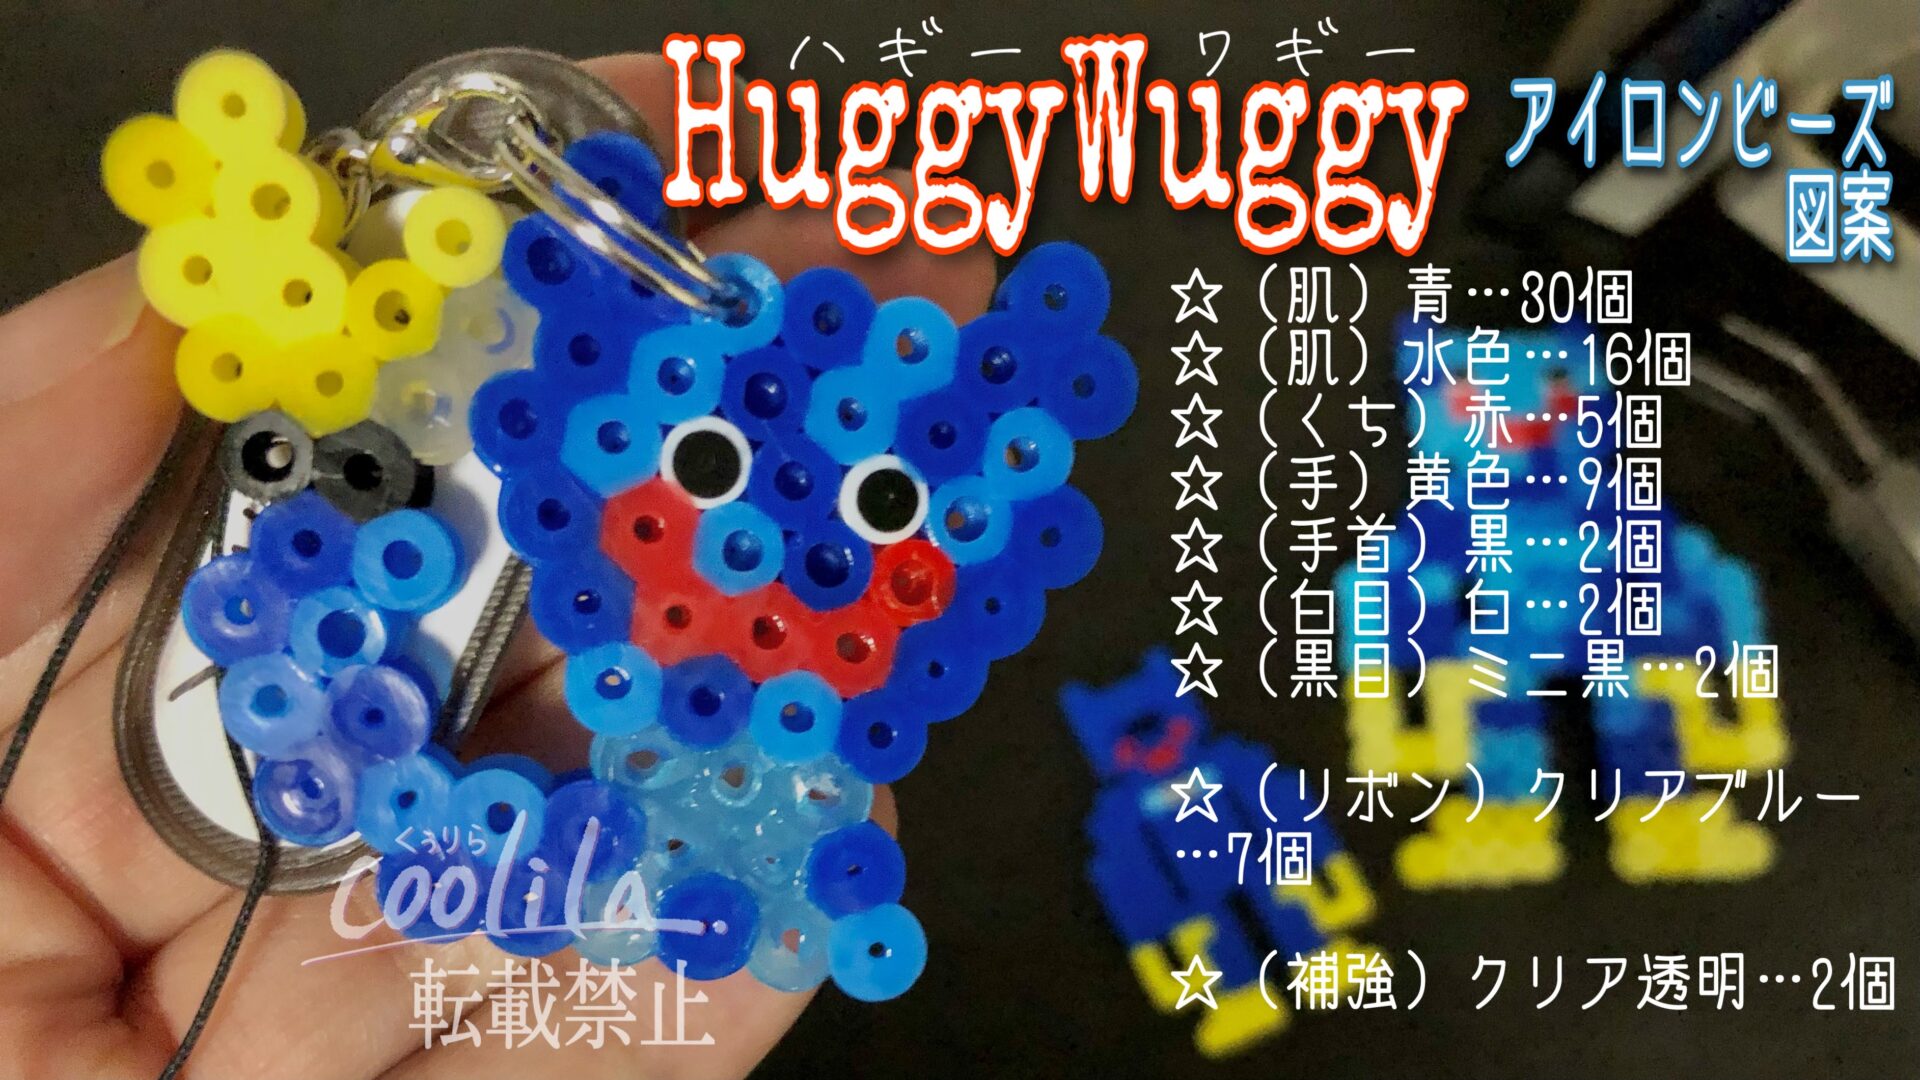 いま人気の青いバケモノ ハギーワギーのアイロンビーズ図案 くぅりらblog